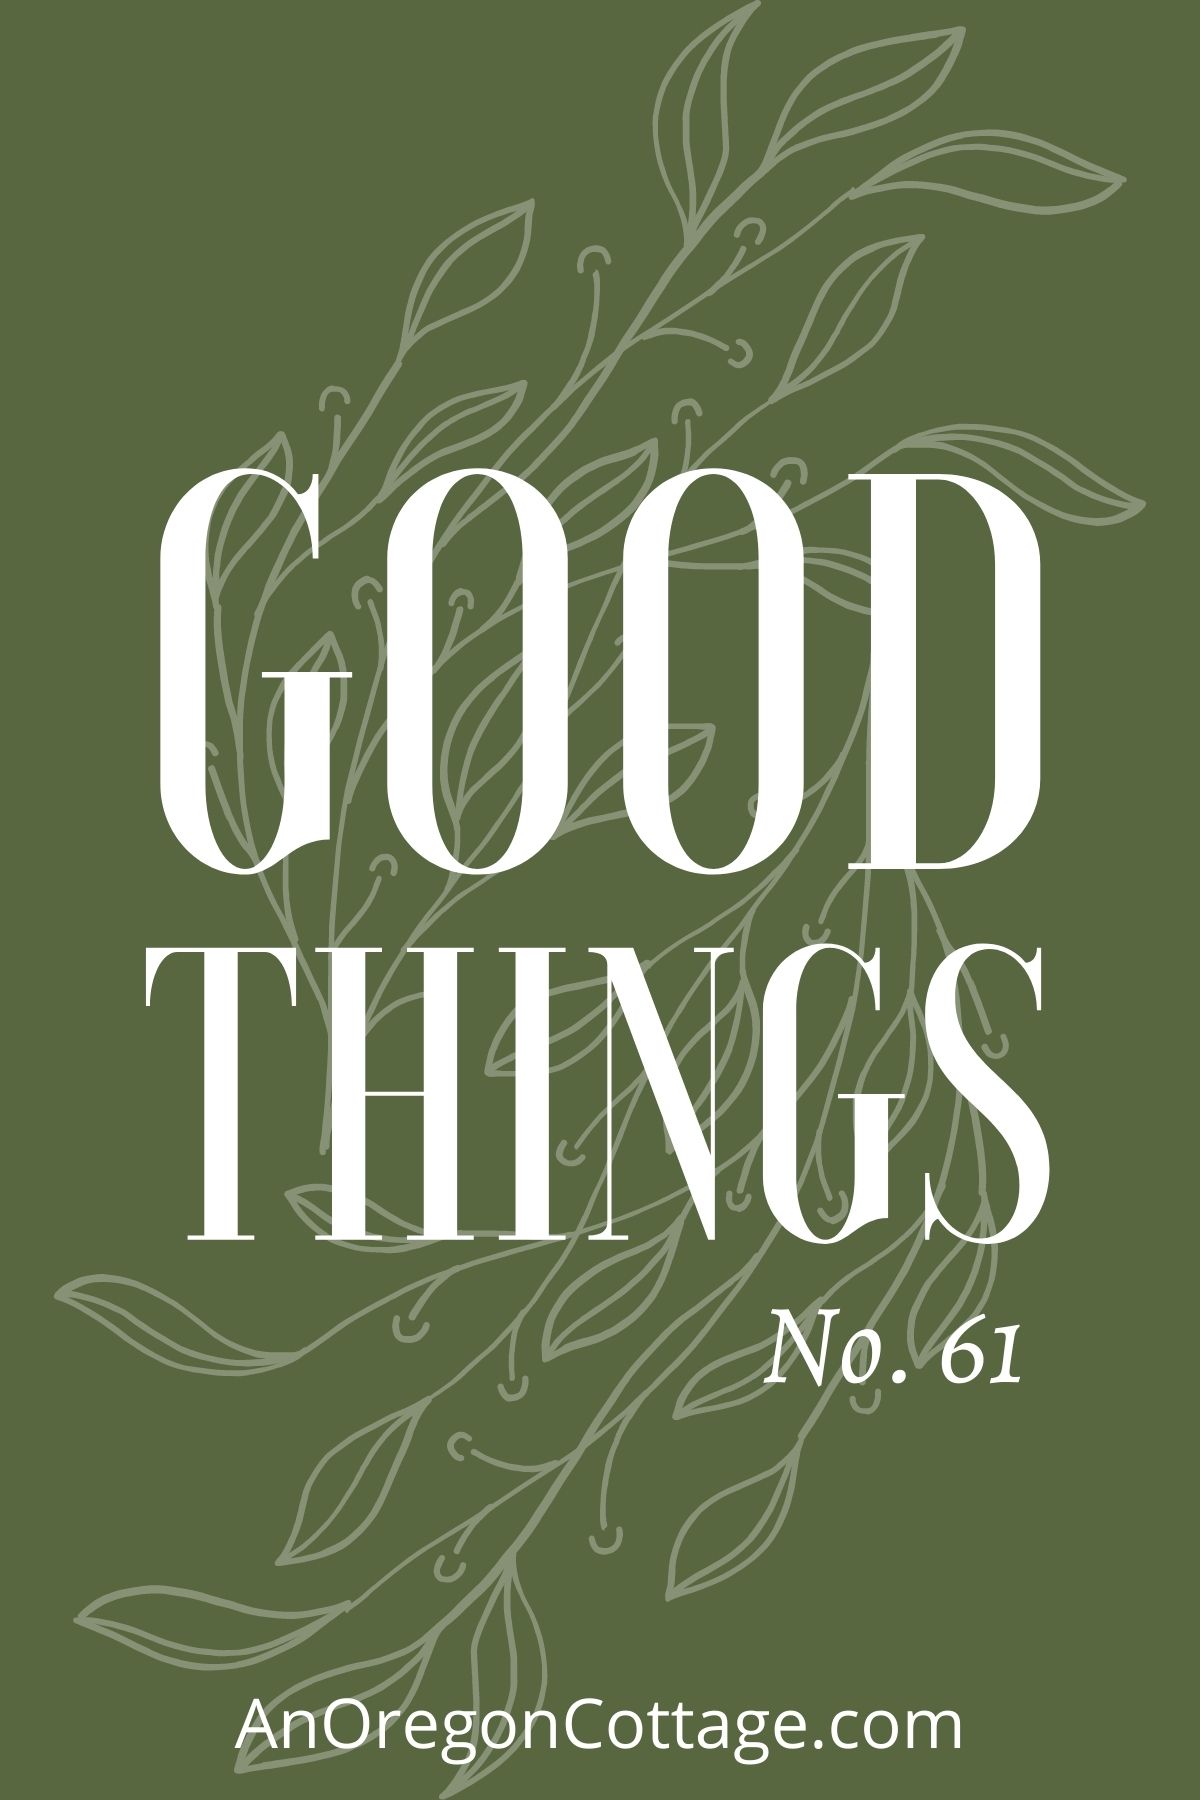 Good things list No.61